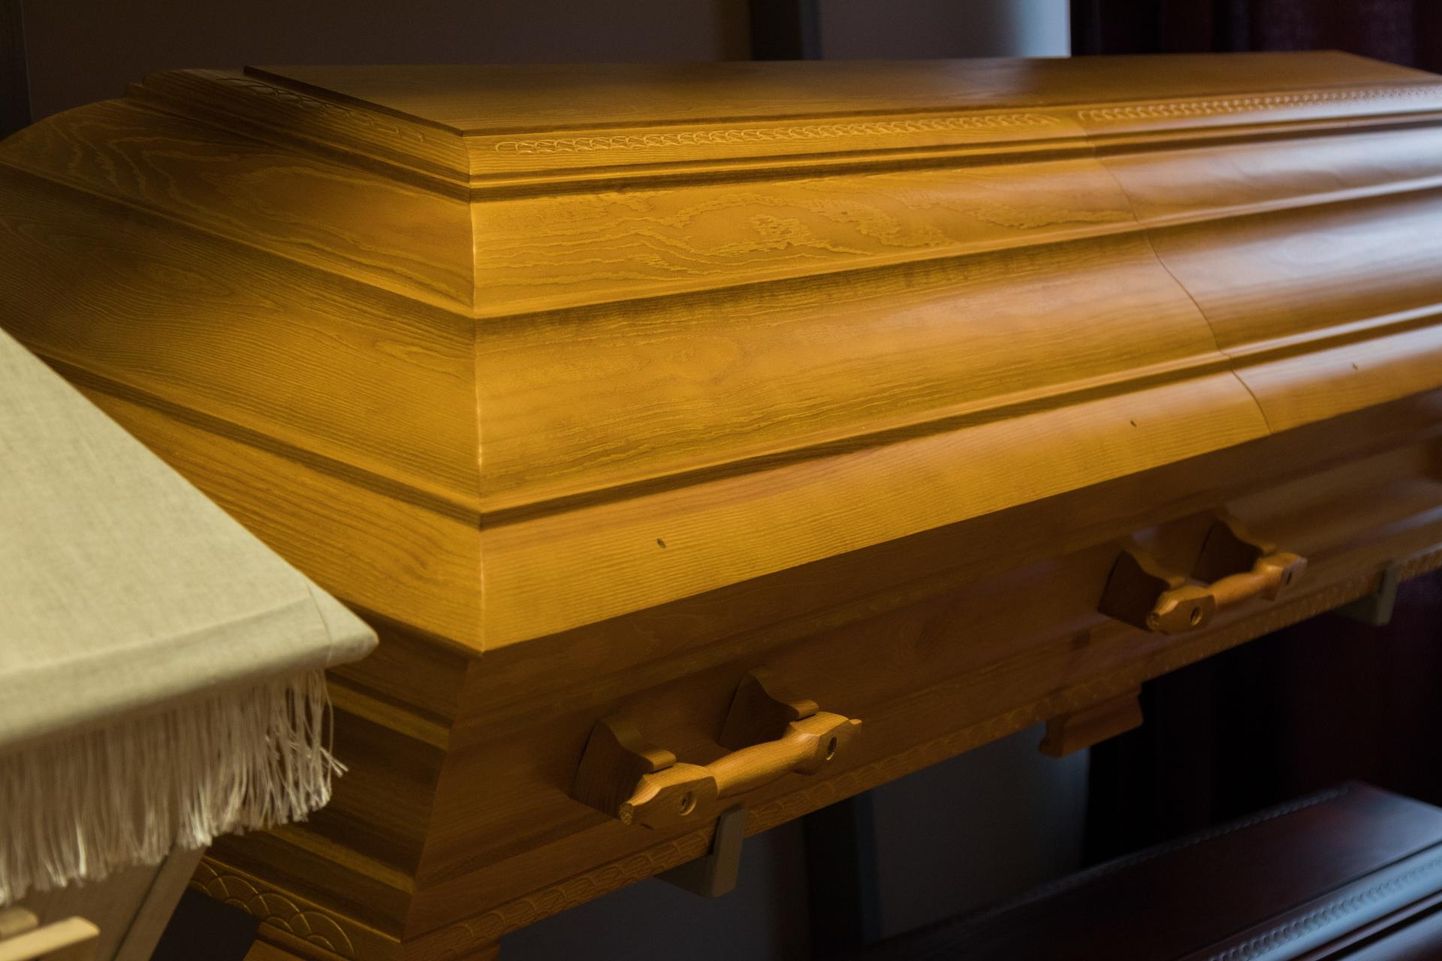 Arvestades seda, milliseks äriks on kujunenud matused, ei ole tänapäeval üldse imekspandav, et eakad endale ise matuseraha koguvad.